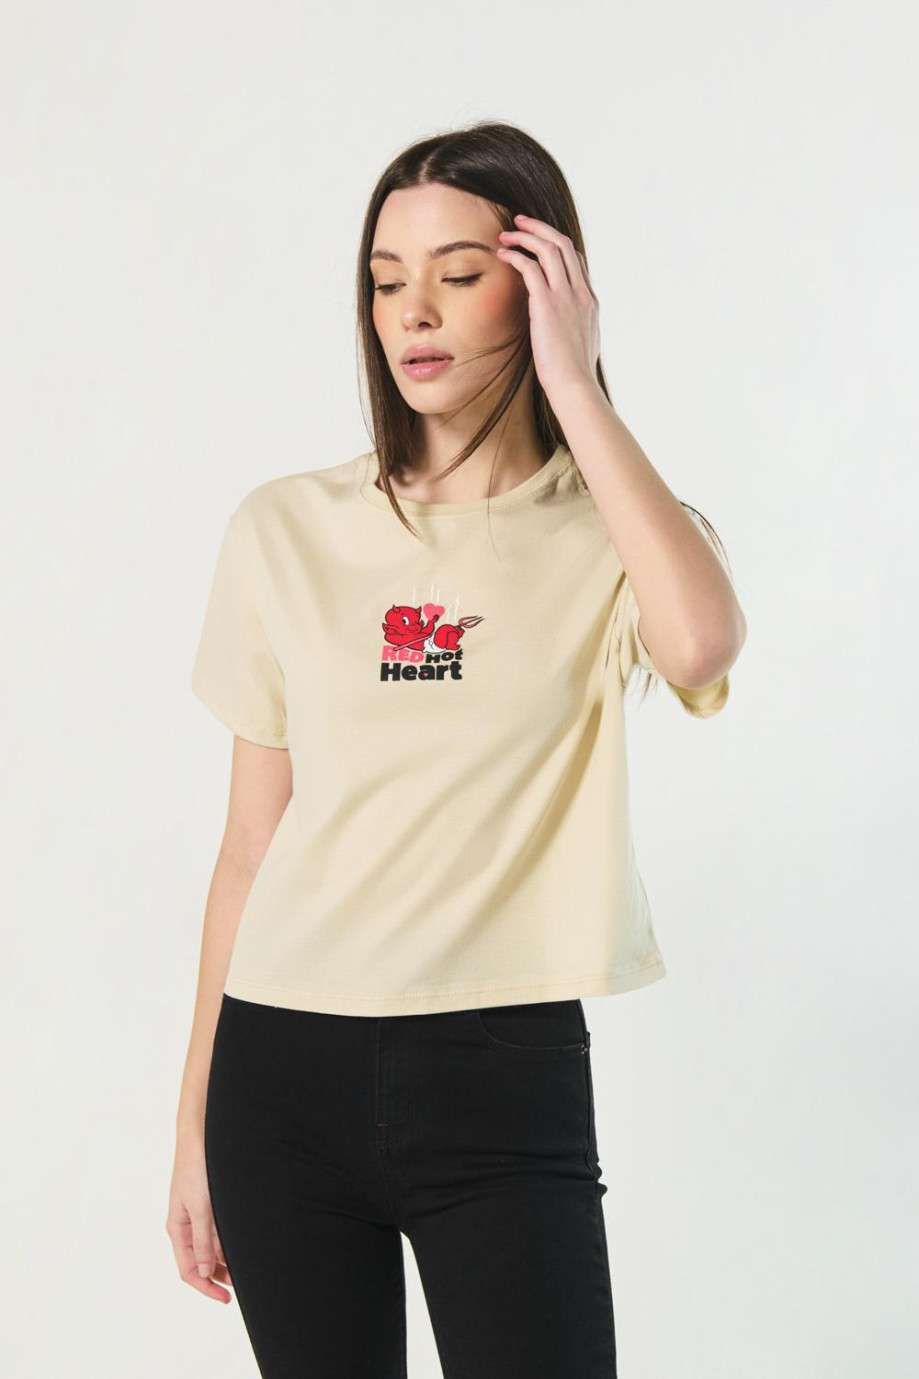 Camiseta crop top kaki clara con diseño de Hot Stuff